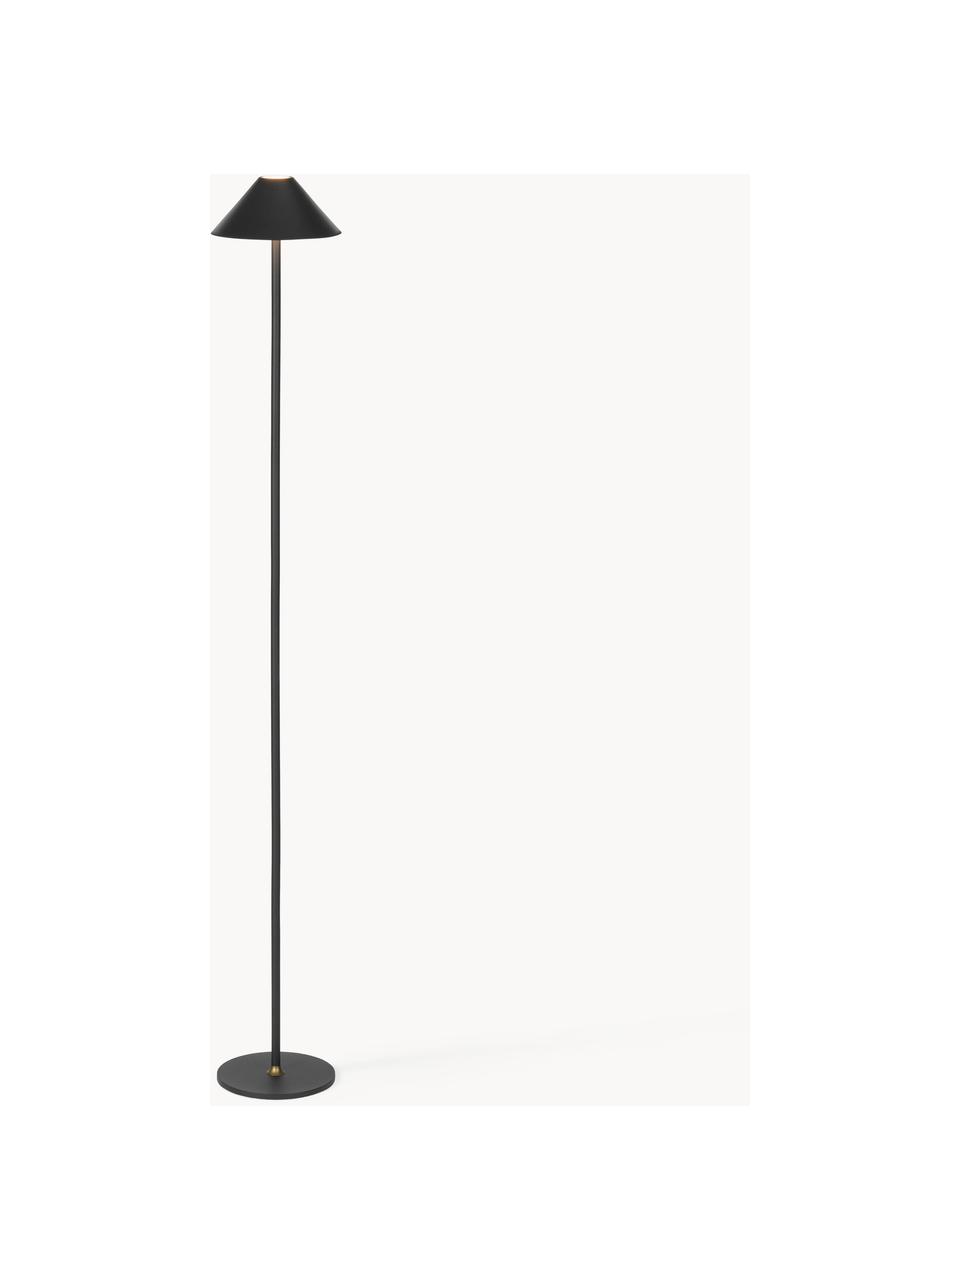 Mobilna lampa podłogowa LED z funkcją przyciemniania Hygge, Metal powlekany, Czarny, W 134 cm